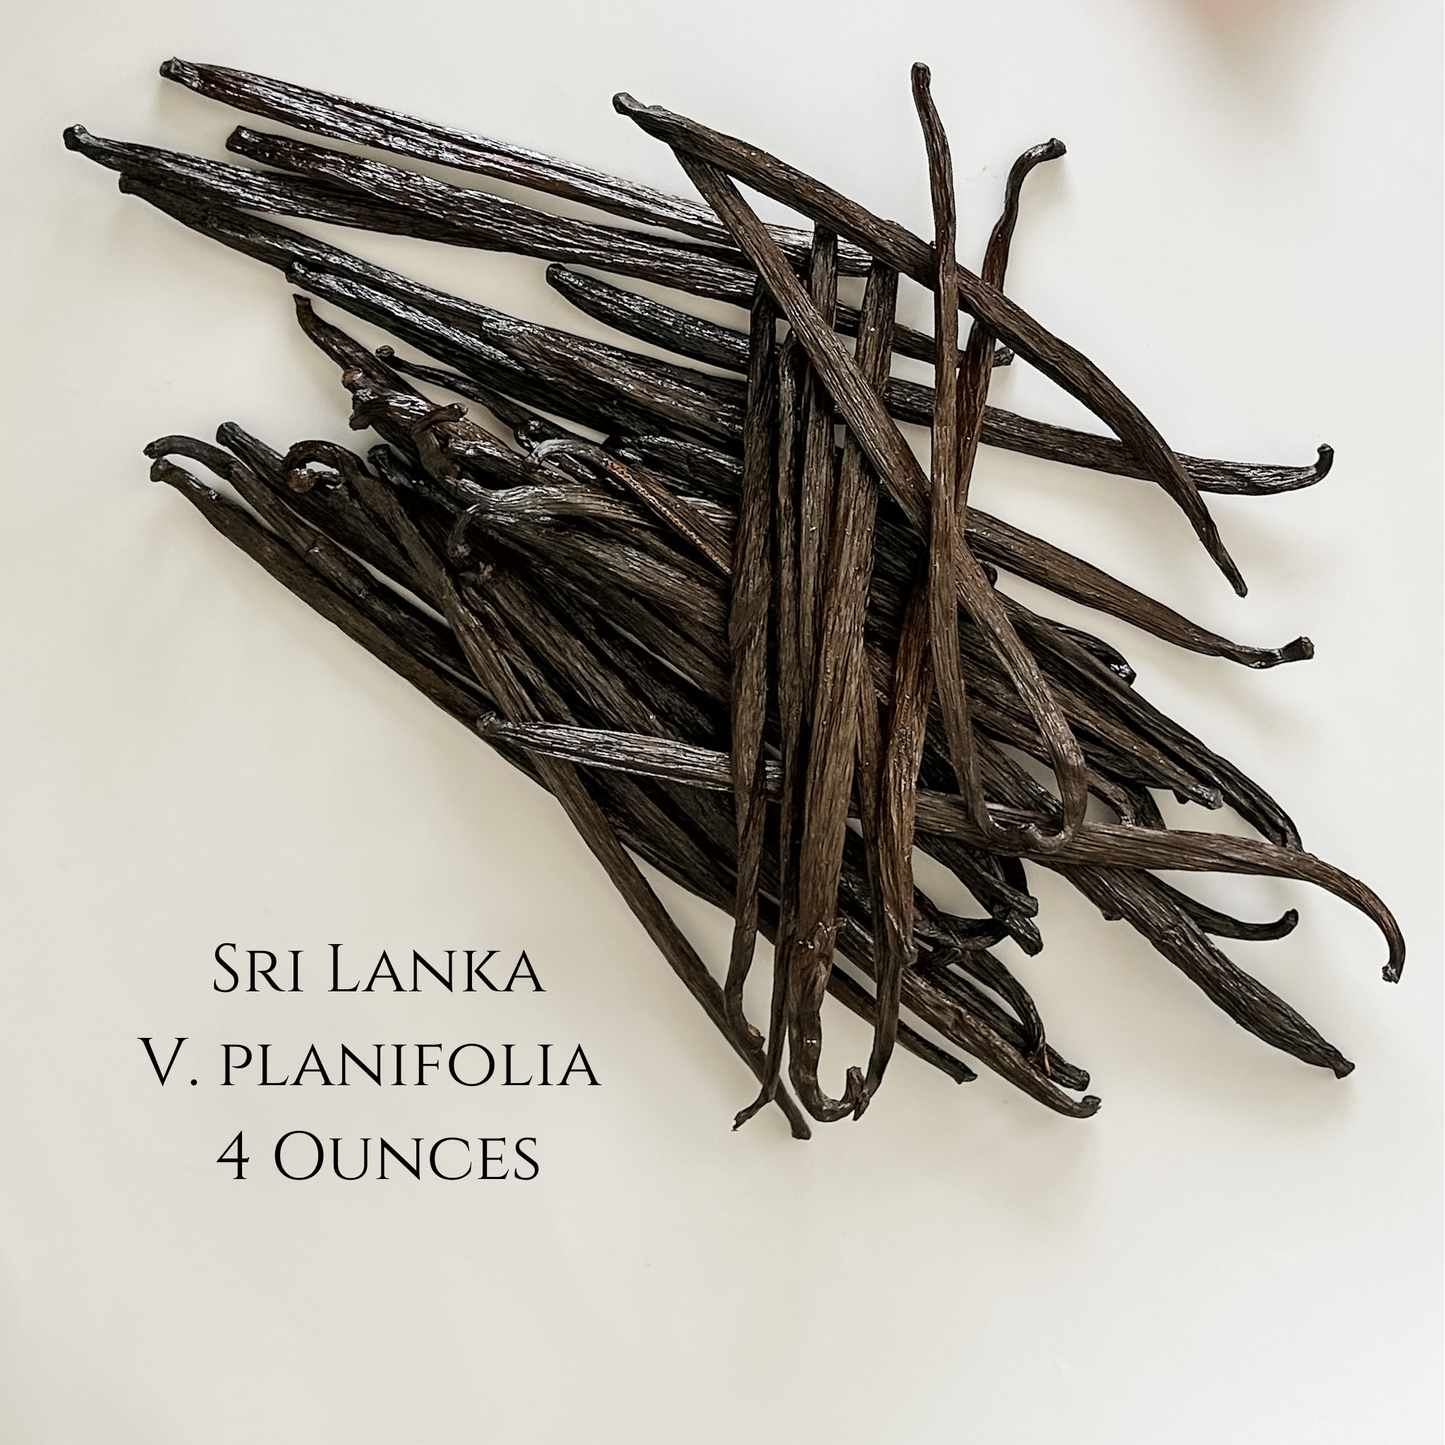 Sri Lanka V. Planifolia Vanilla Beans